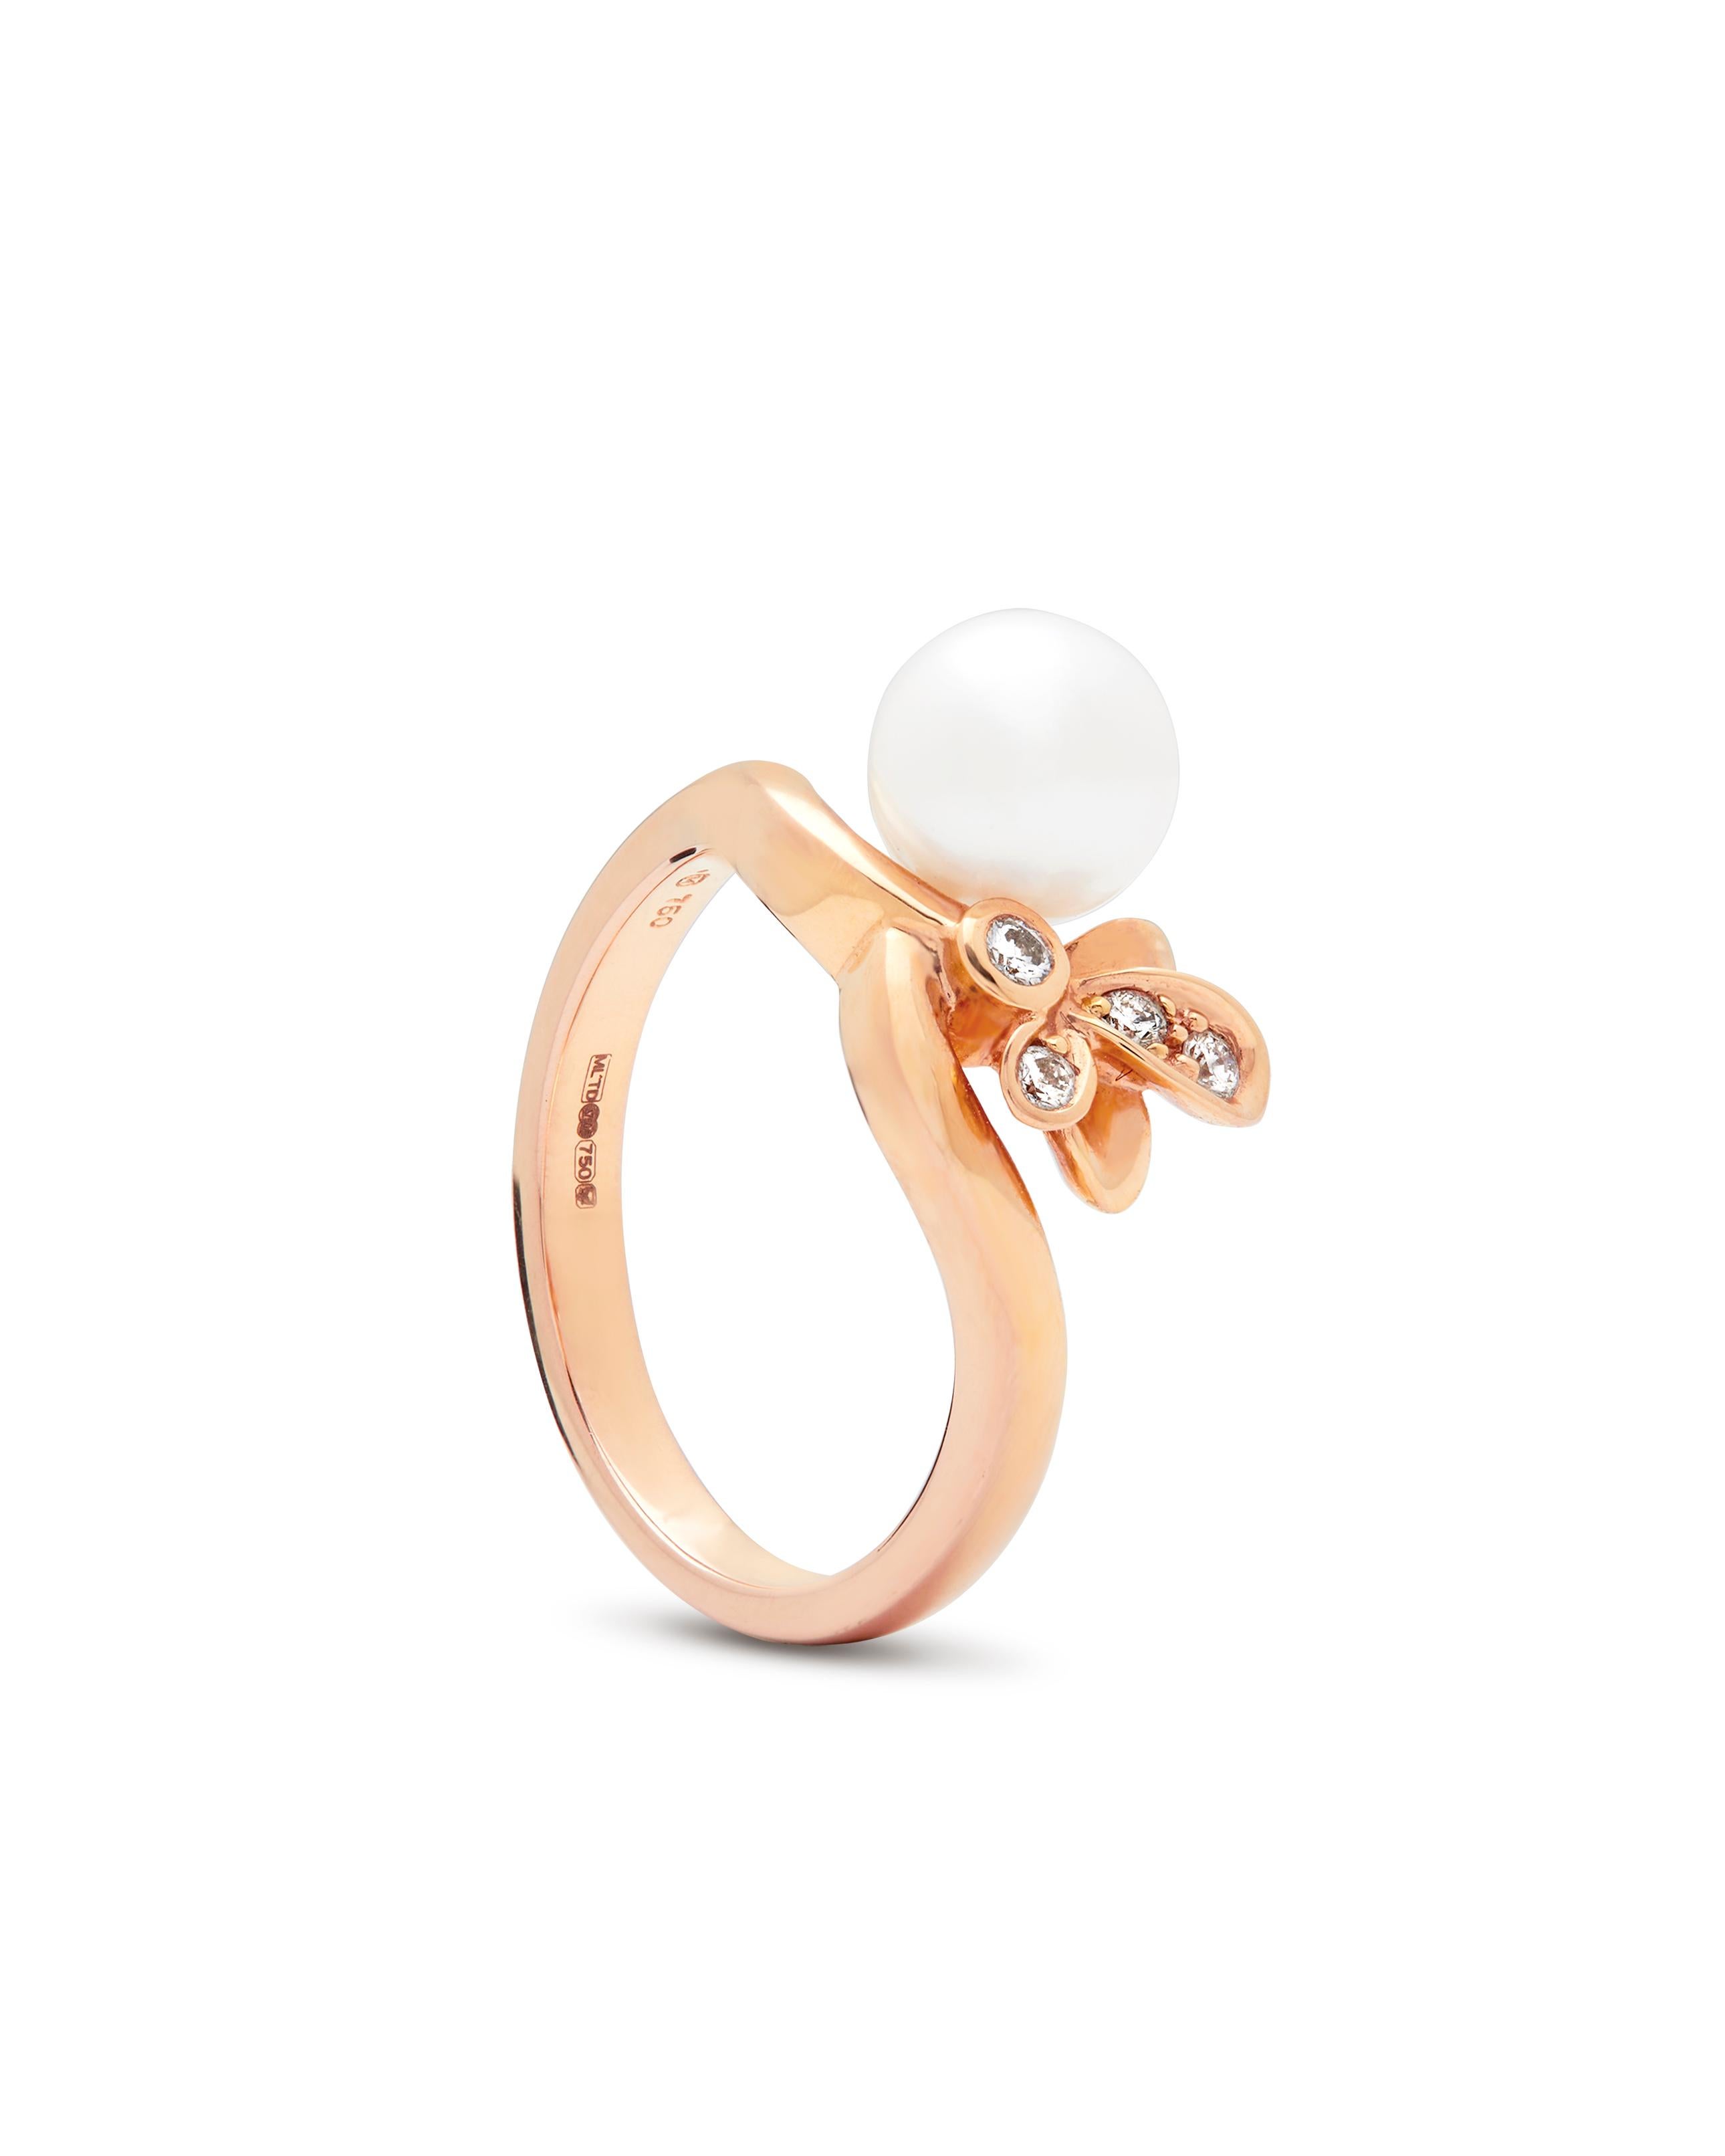 Mikimoto 'Dandelion' Collection Perlen- und Diamantring in 18 Karat Roségold. 
Der Ring besteht aus einer Akoya-Perle mit leicht rosafarbenem Schimmer, die mit vier runden Diamanten im Brillantschliff (0,06 Karat) in einem floralen Design gefasst